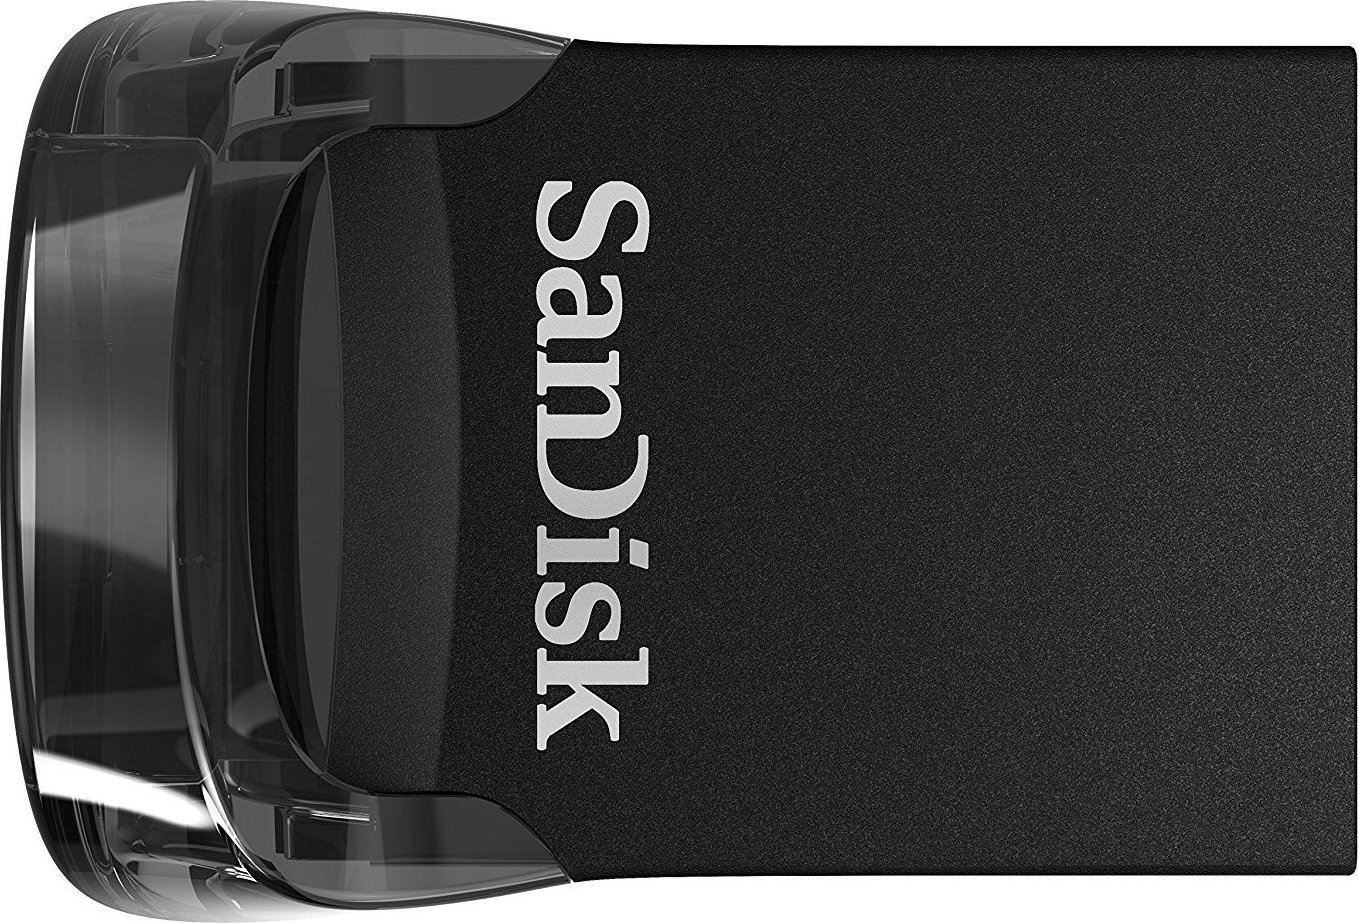 USB Stick 256GB Sandisk Ultra Fit